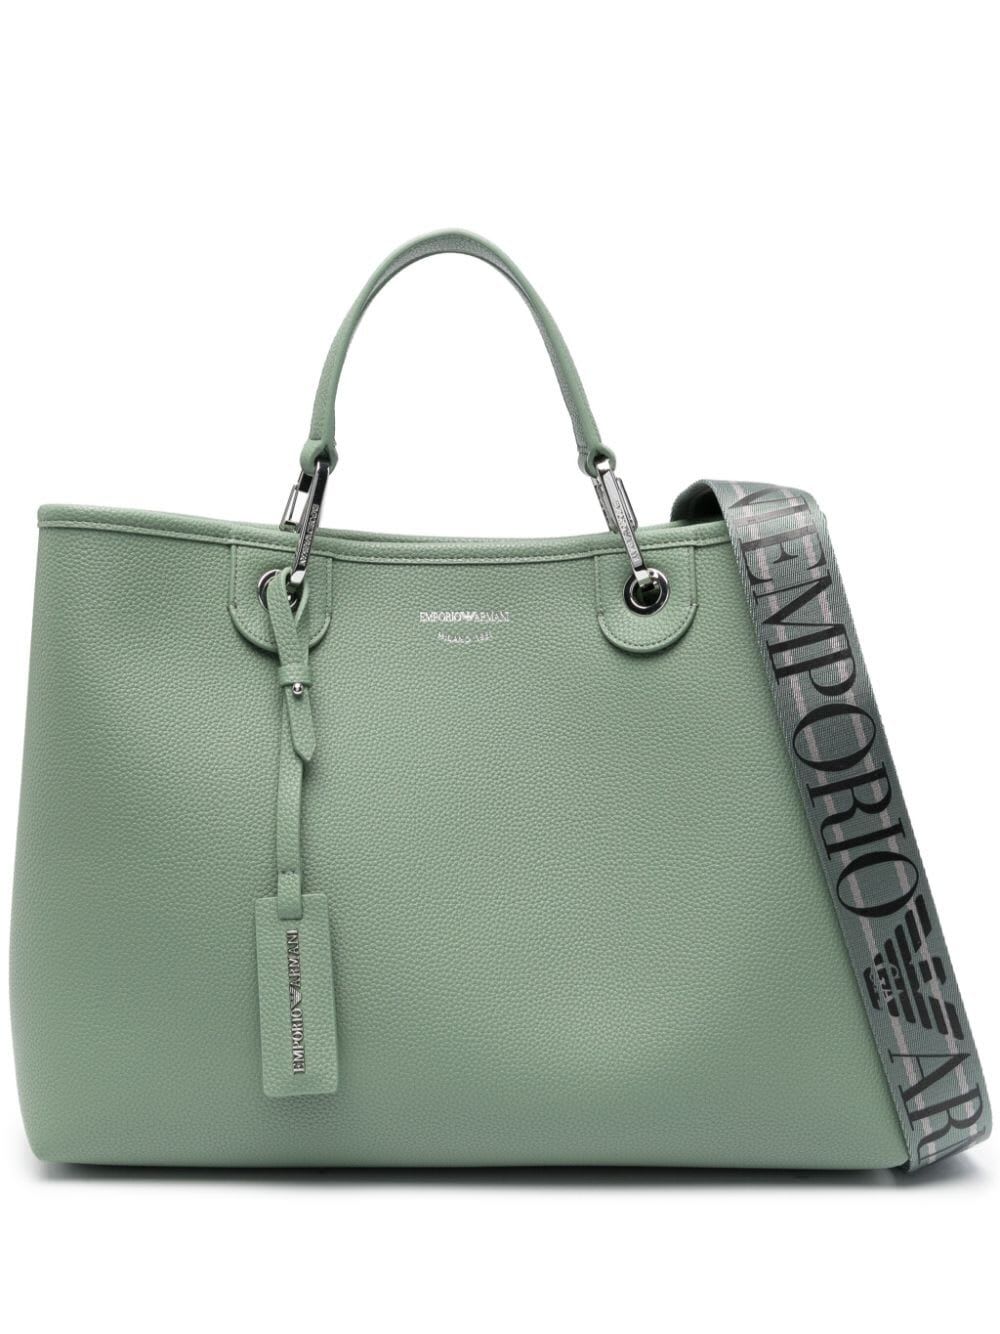 Emporio Armani Shopping Bag In Green